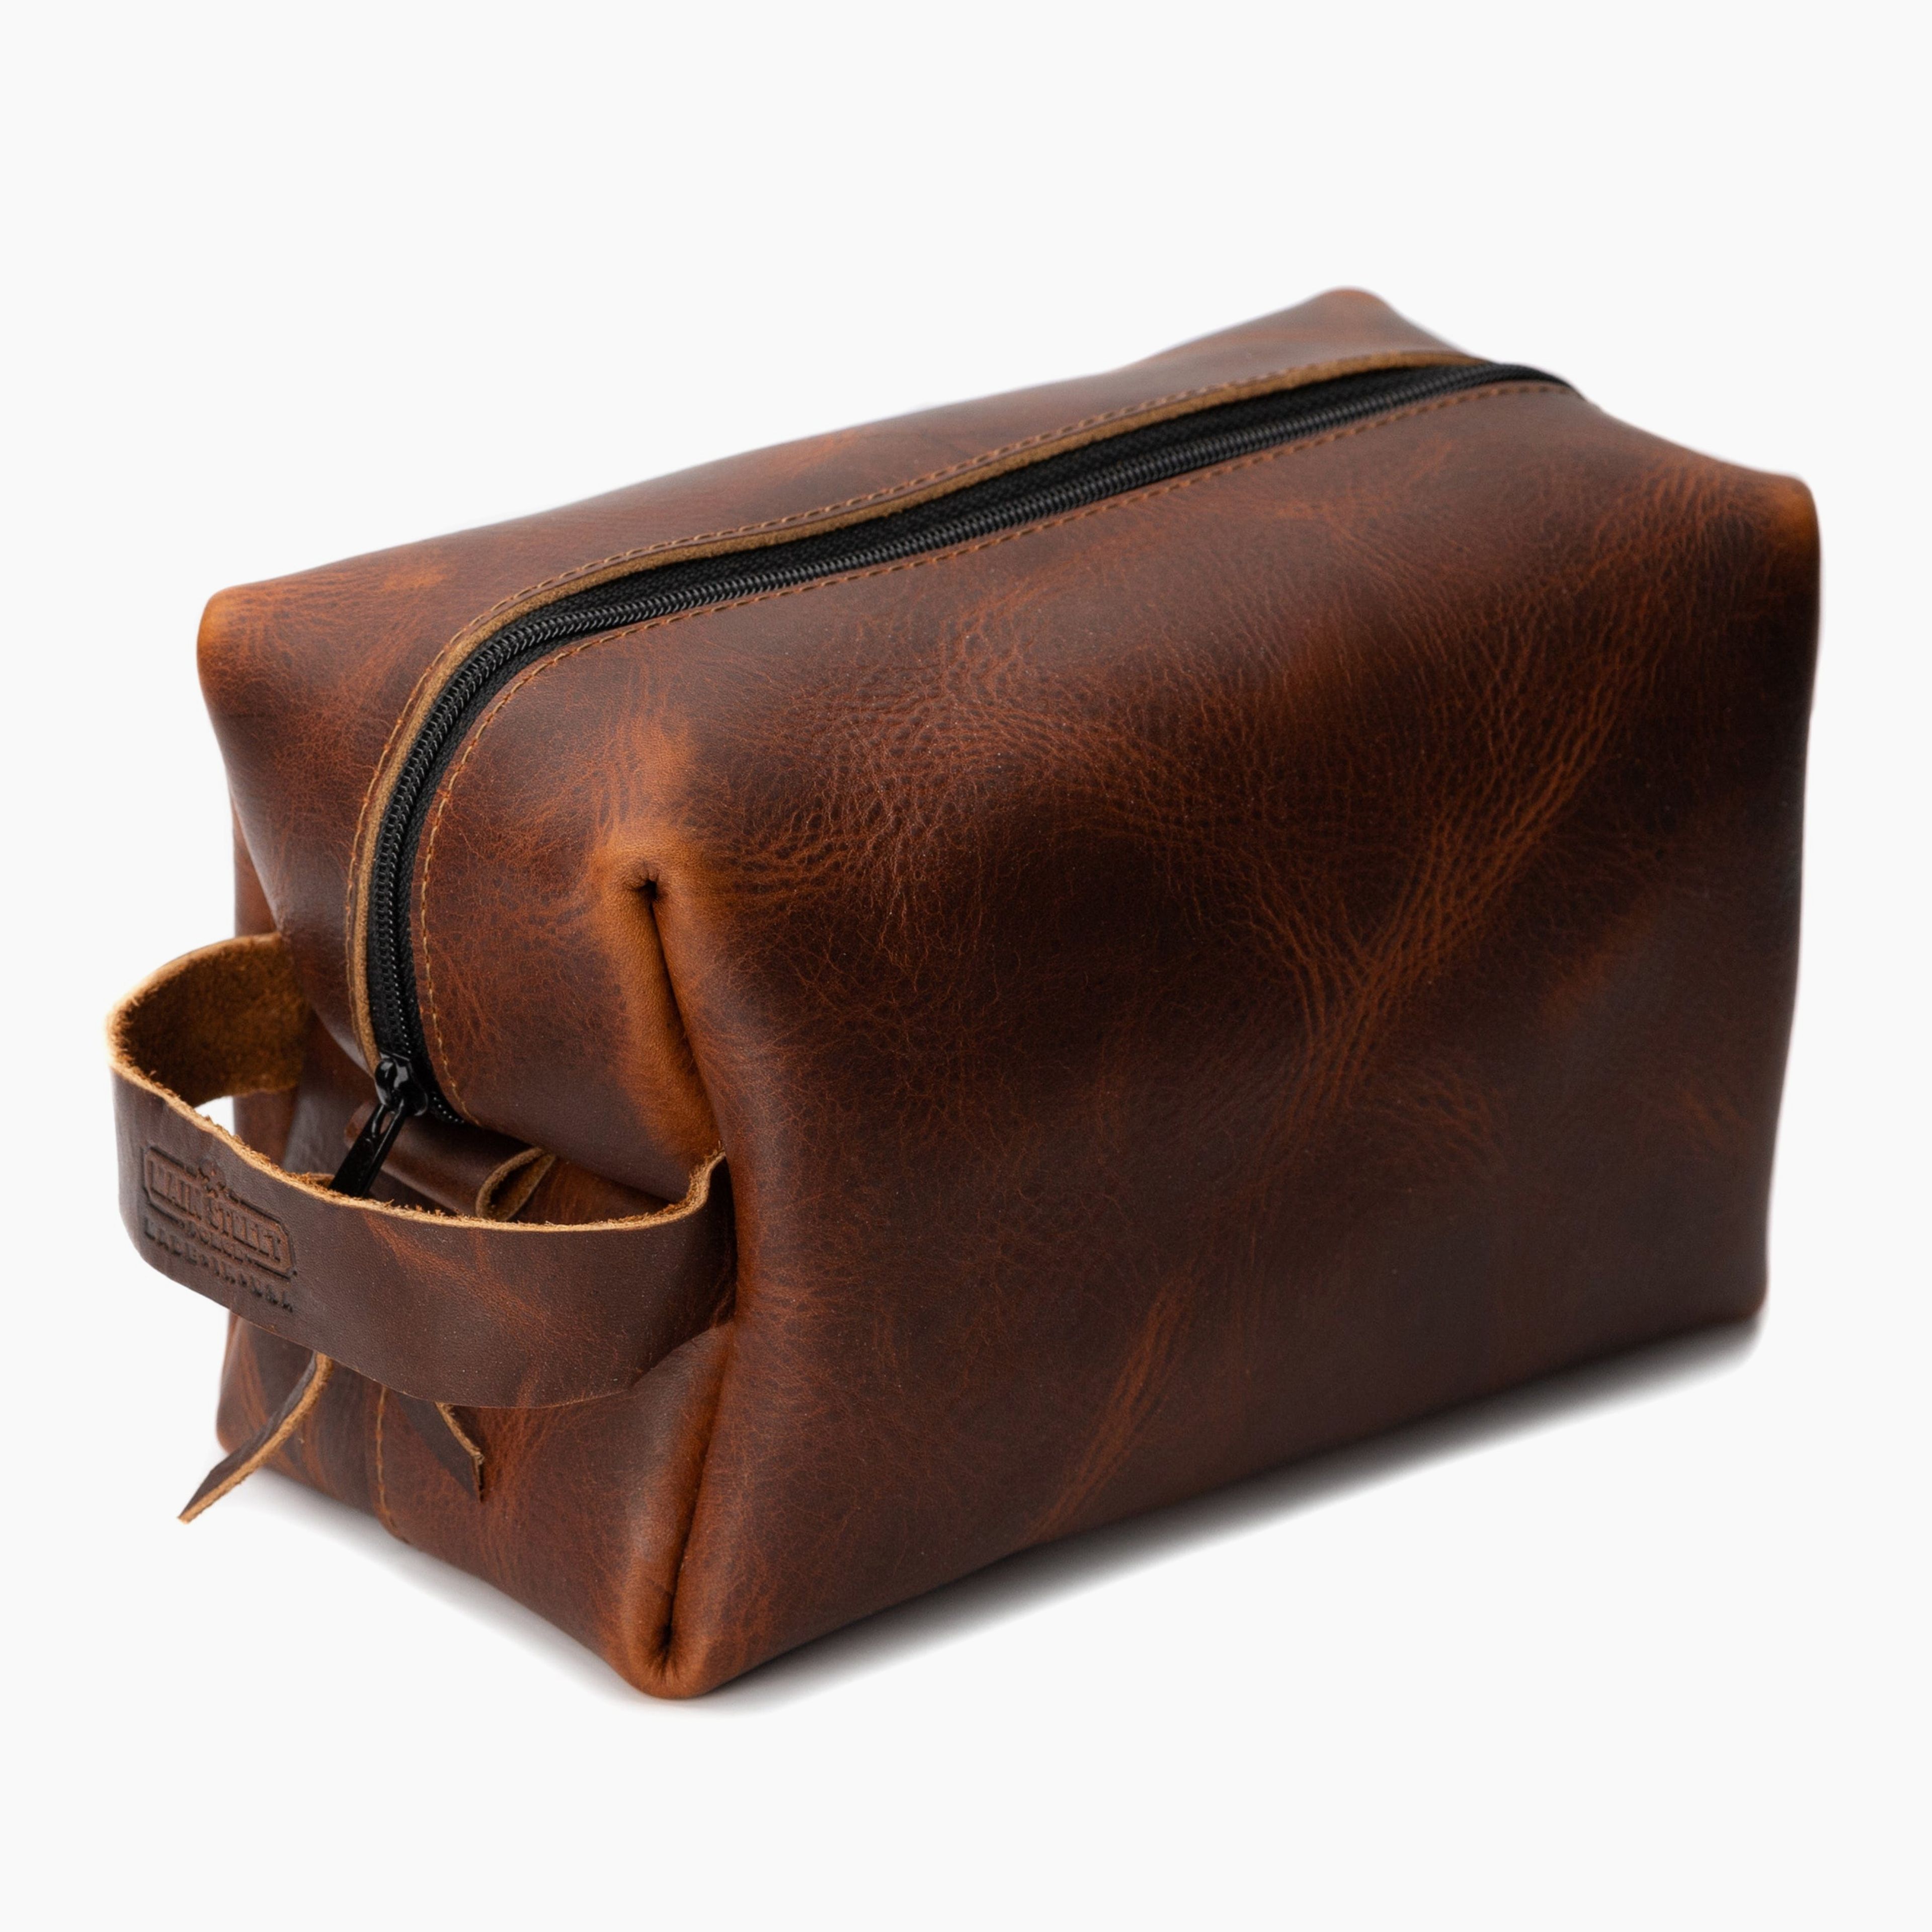 Leather Toiletry Bag for Men | Dopp Kit / Travel Pack